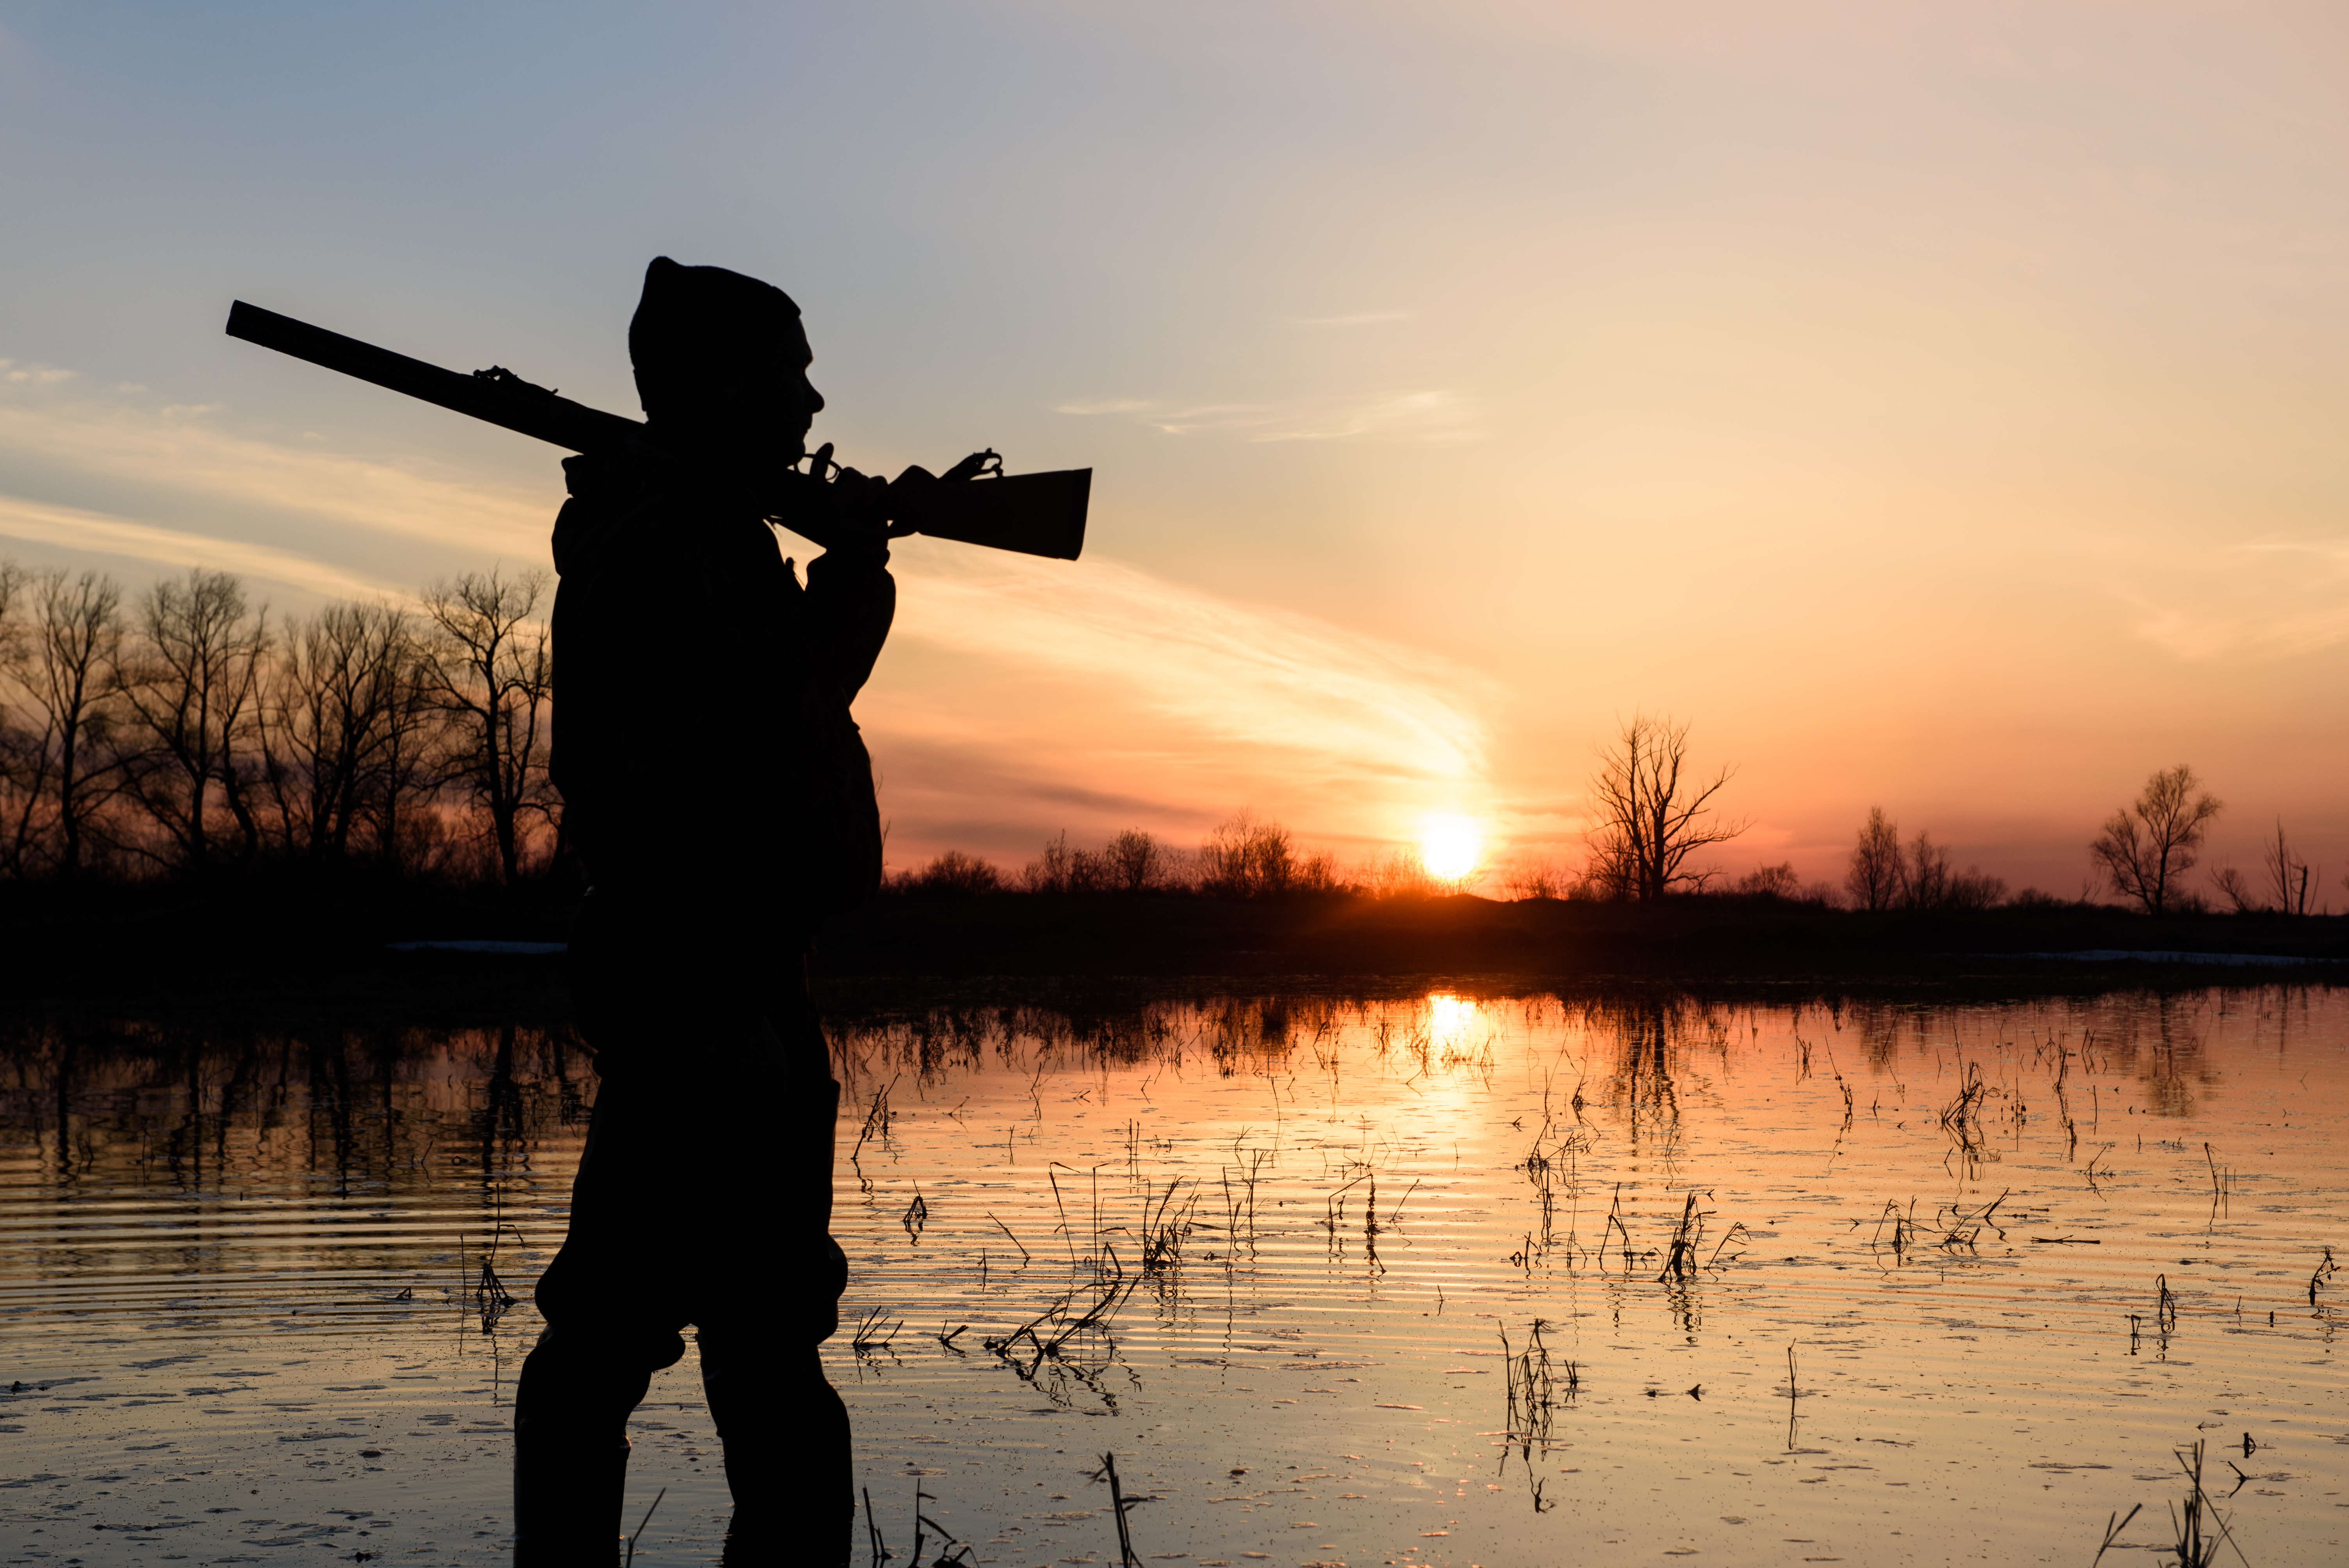 Hunting at sunset